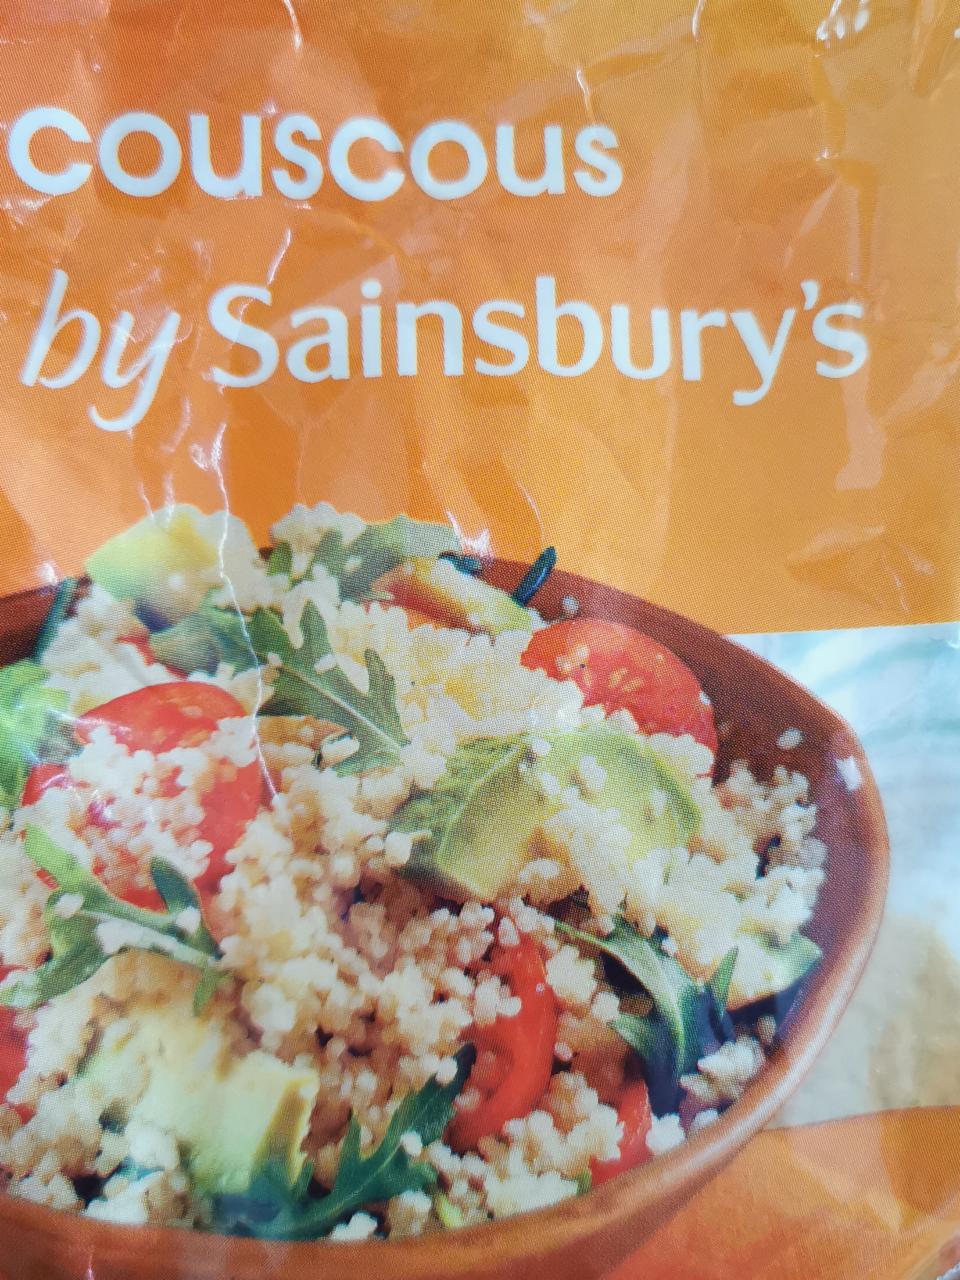 Fotografie - Couscous by Sainsbury's